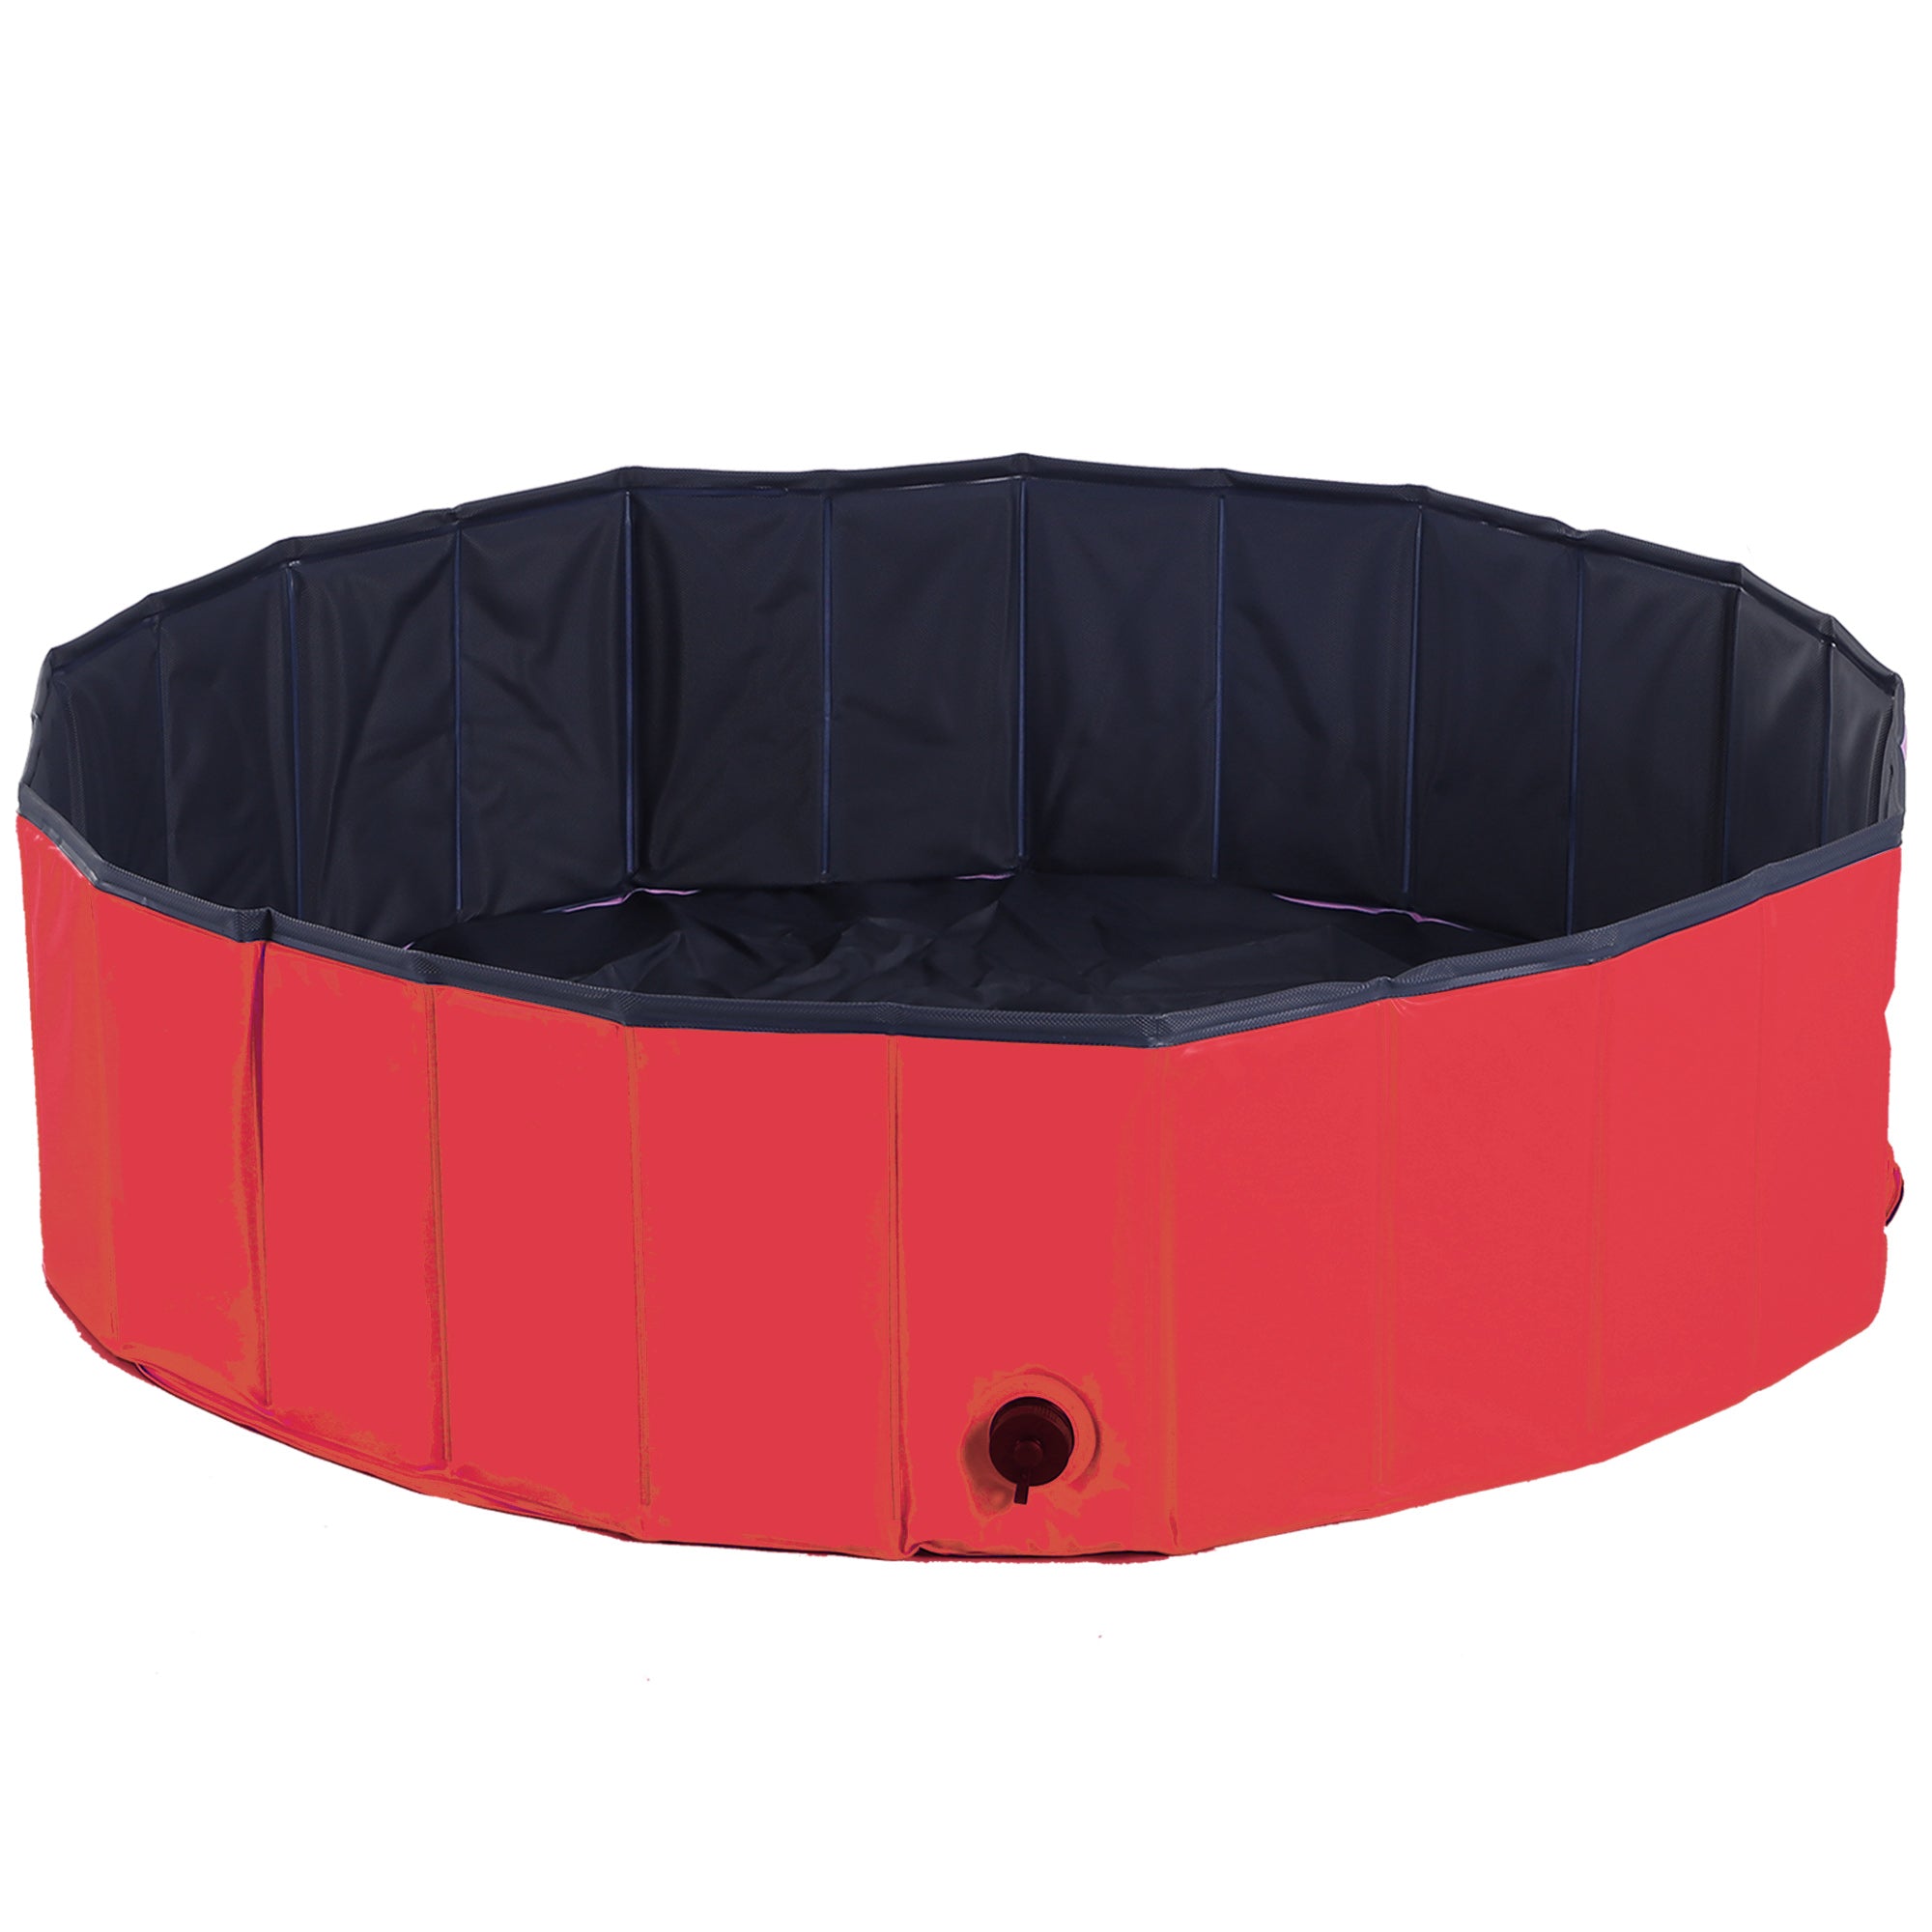 Pet Swimming Pool, Foldable, 120 cm Diameter-Red